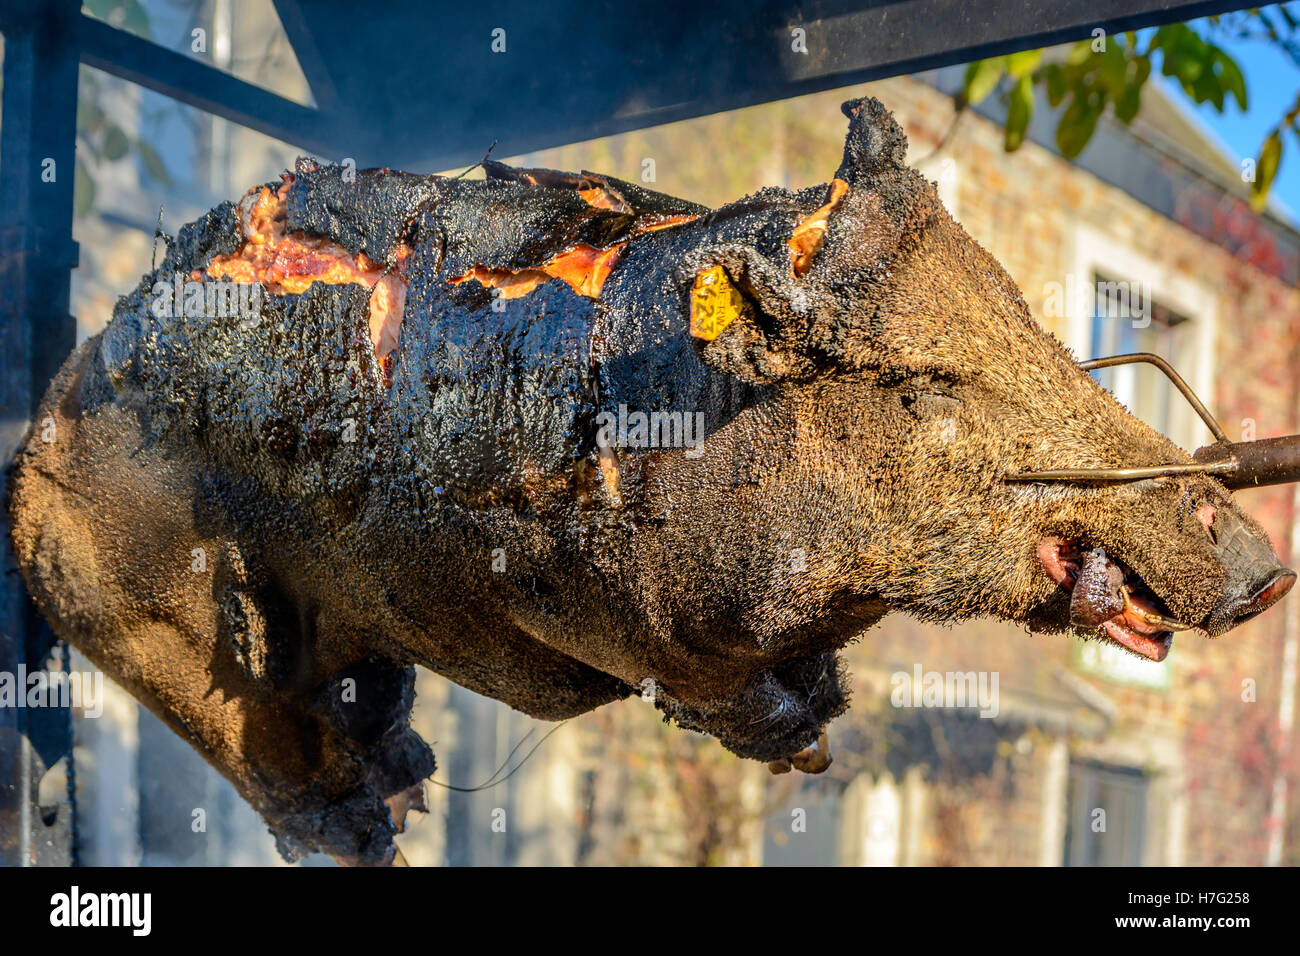 Wildschwein am Spieß grillen Stockfotografie - Alamy